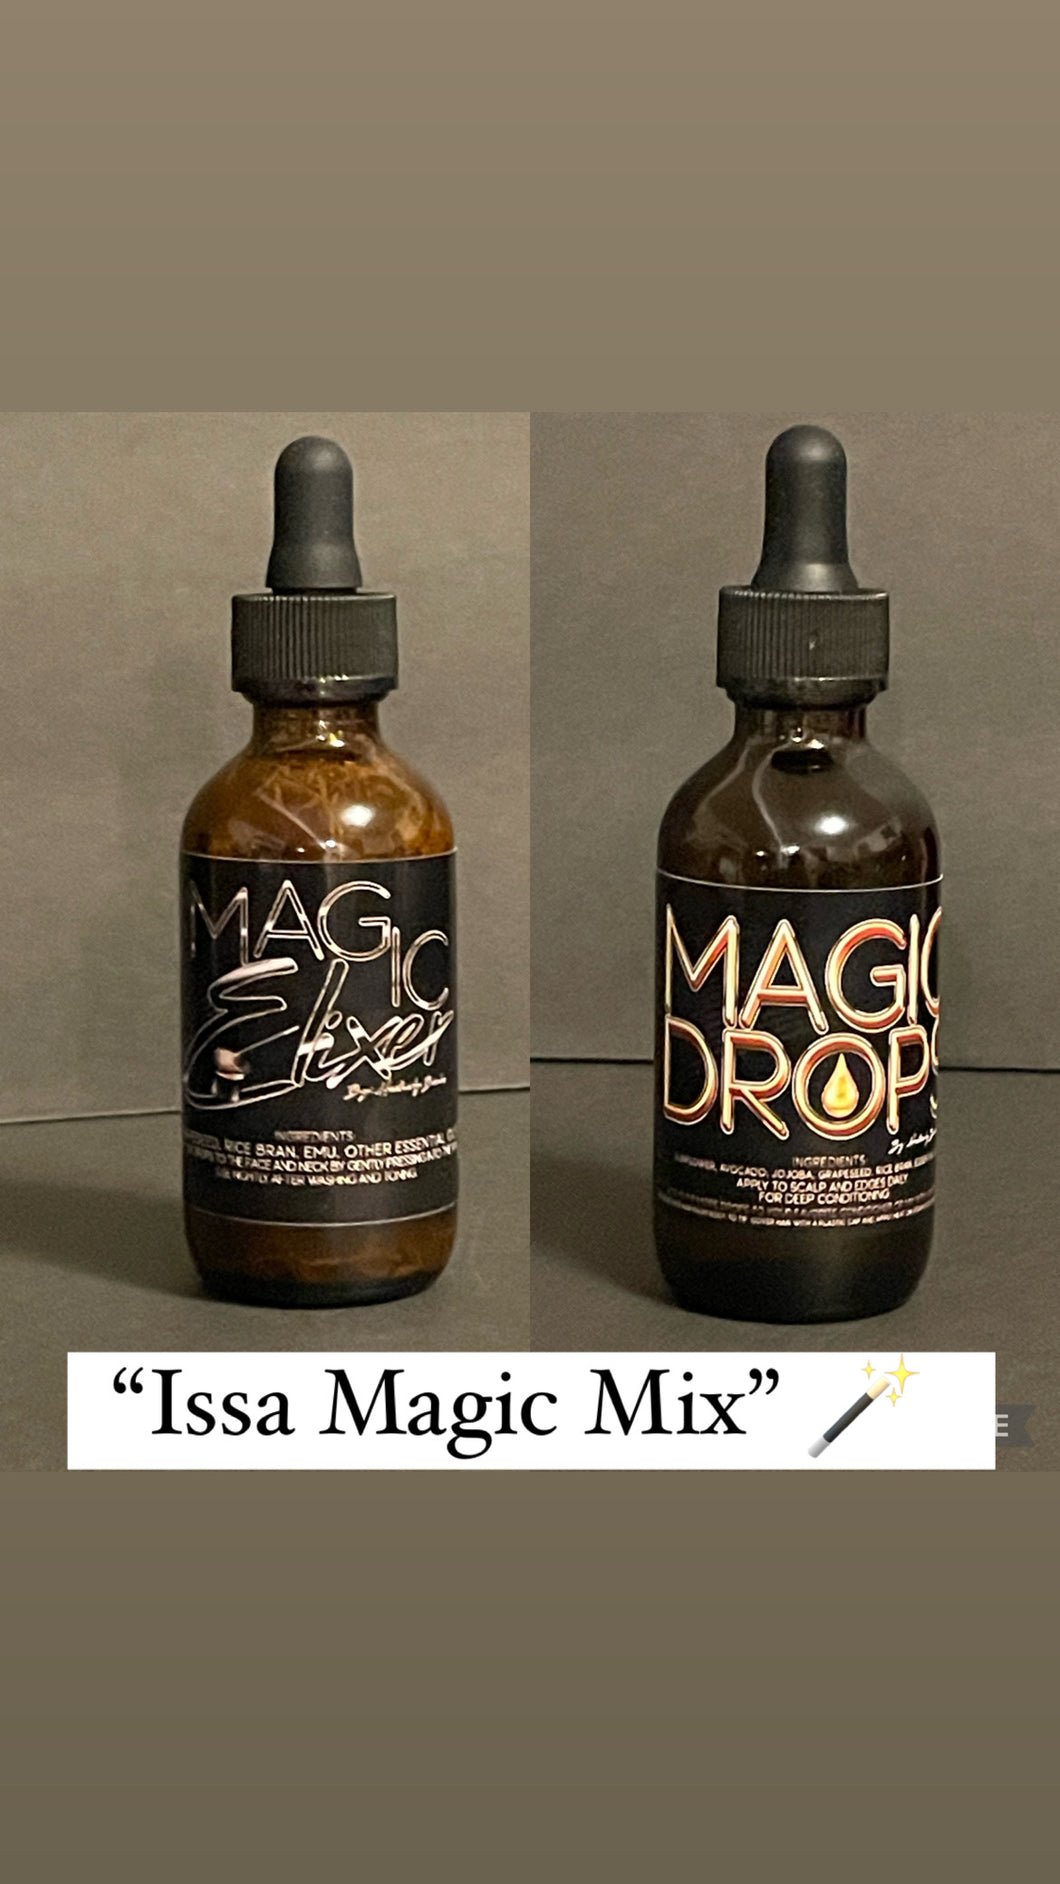 Issa Magic Mix